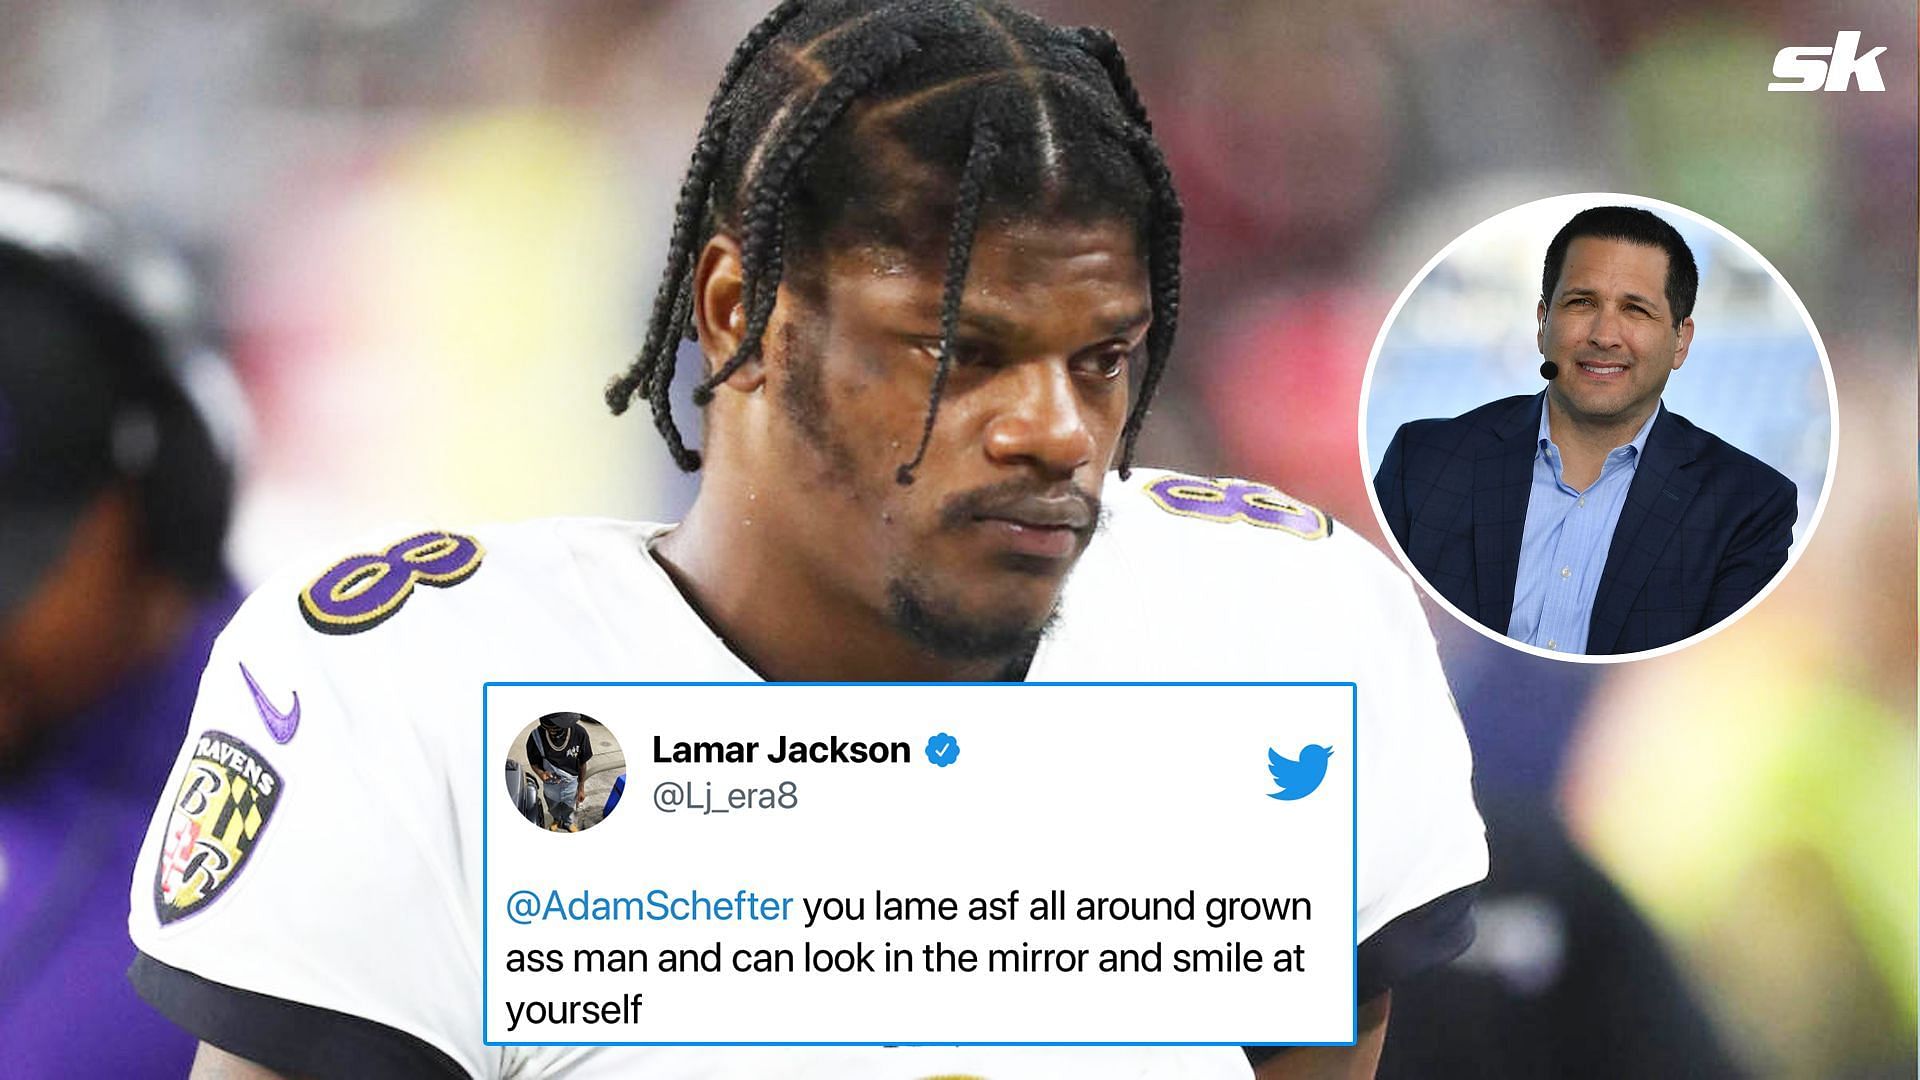 Lamar Jackson comments on Schefter #39 s tweet about Dwayne Haskins